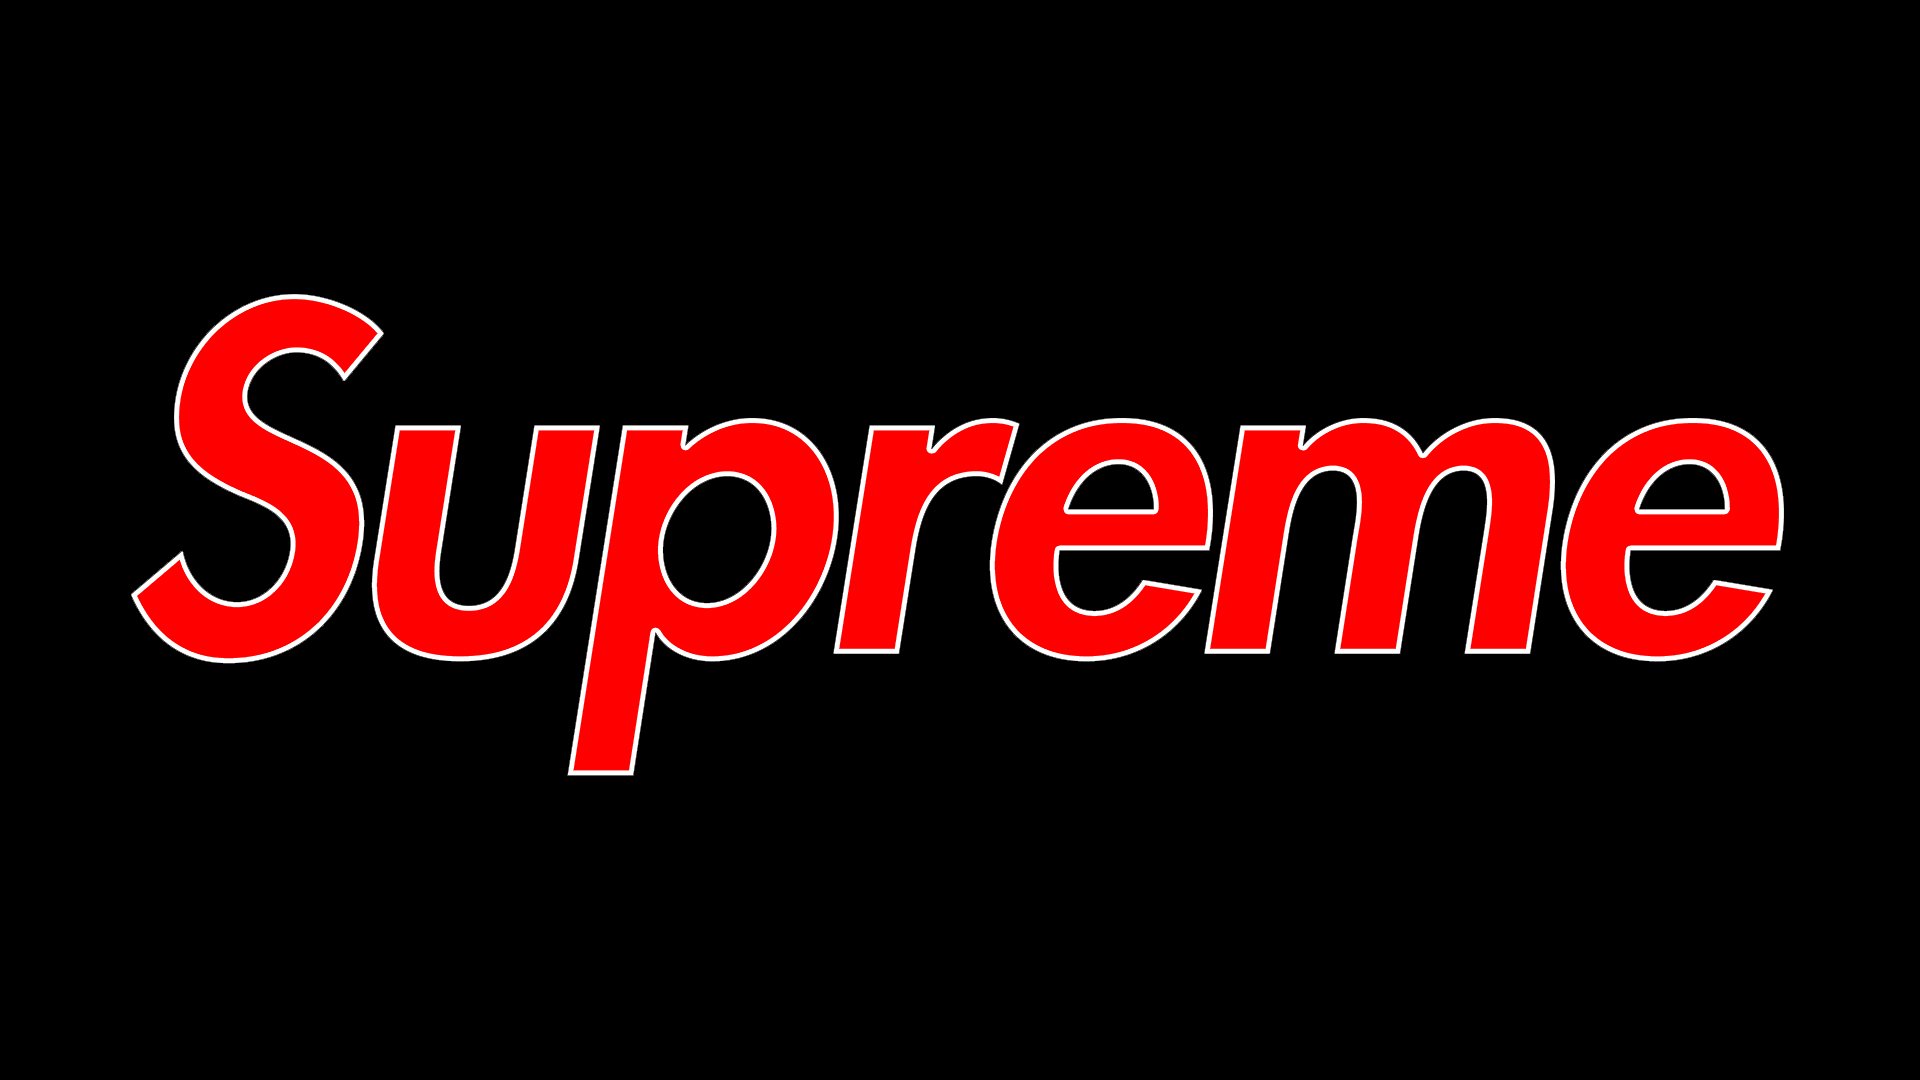 Supreme Font is → Futura